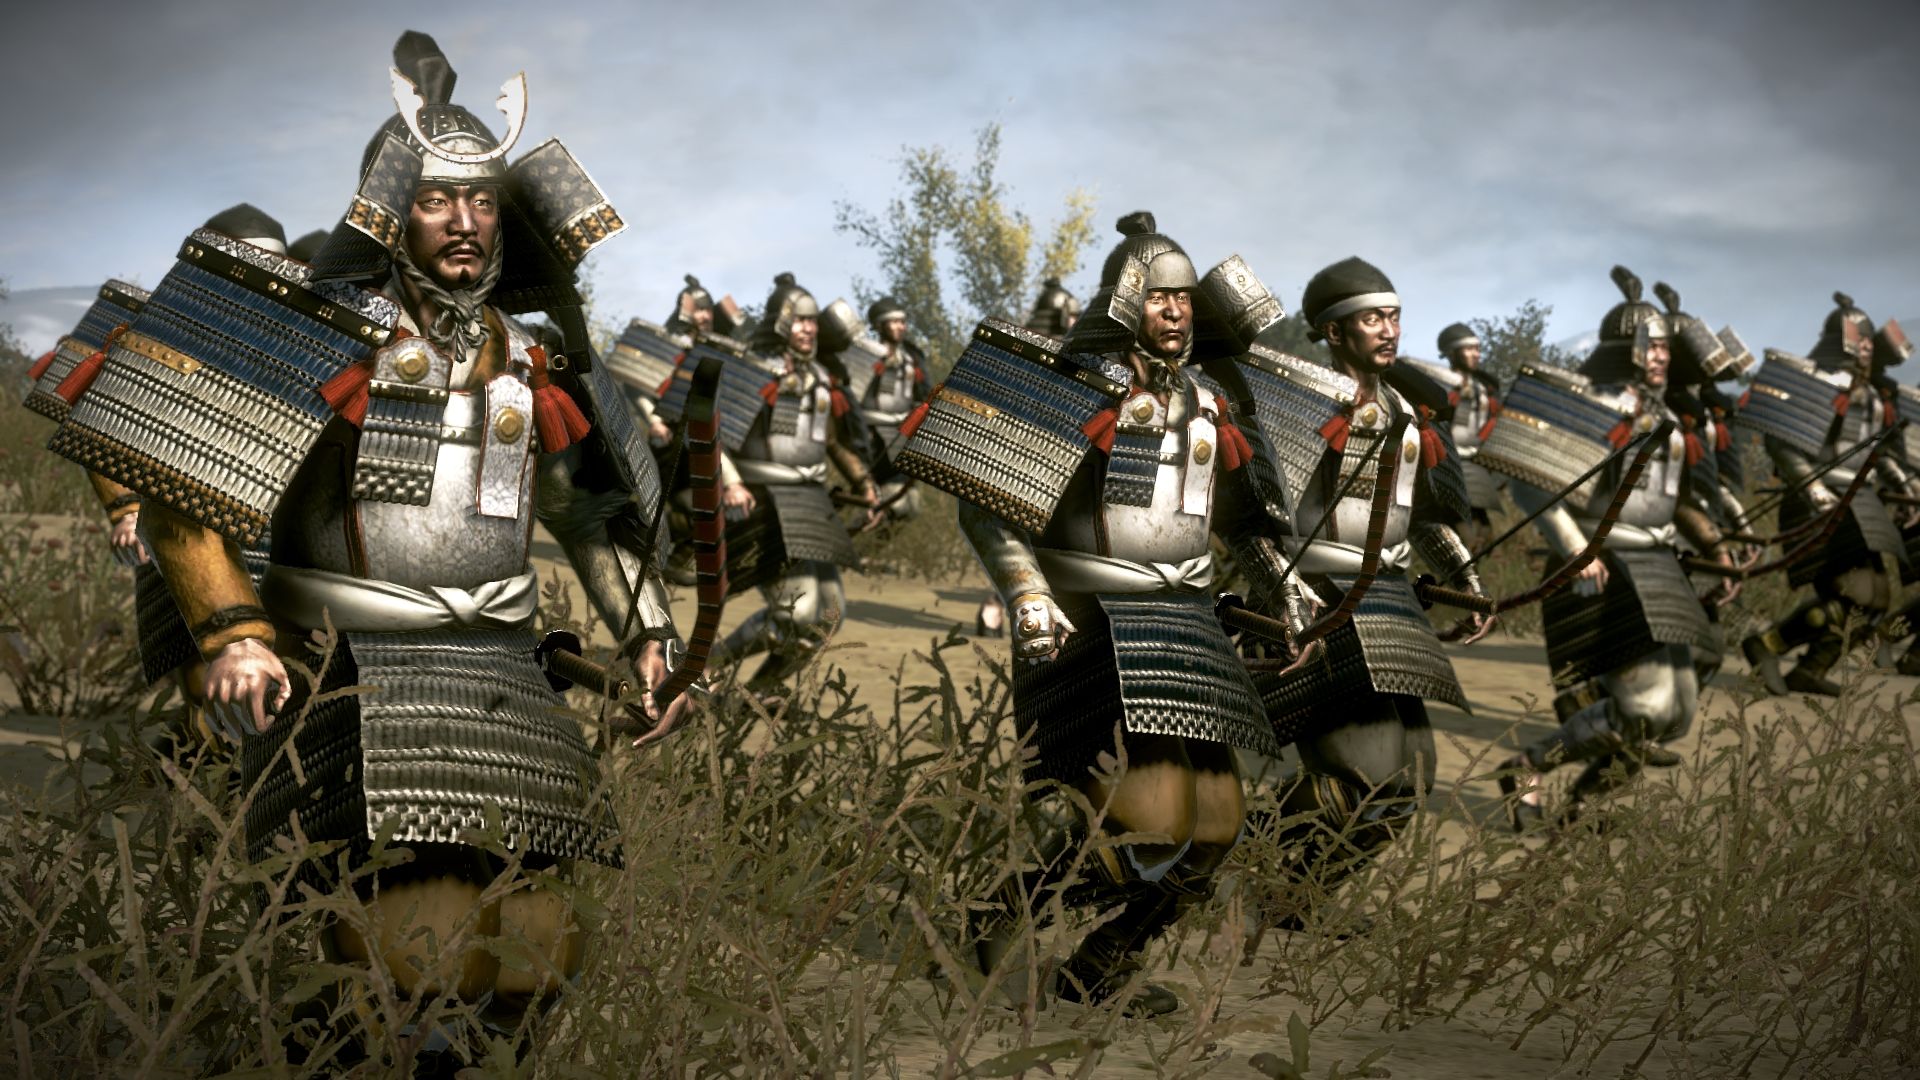 Total War: Shogun 2 - Rise of the Samurai Campaign DLC EU Steam CD Key 5.01$